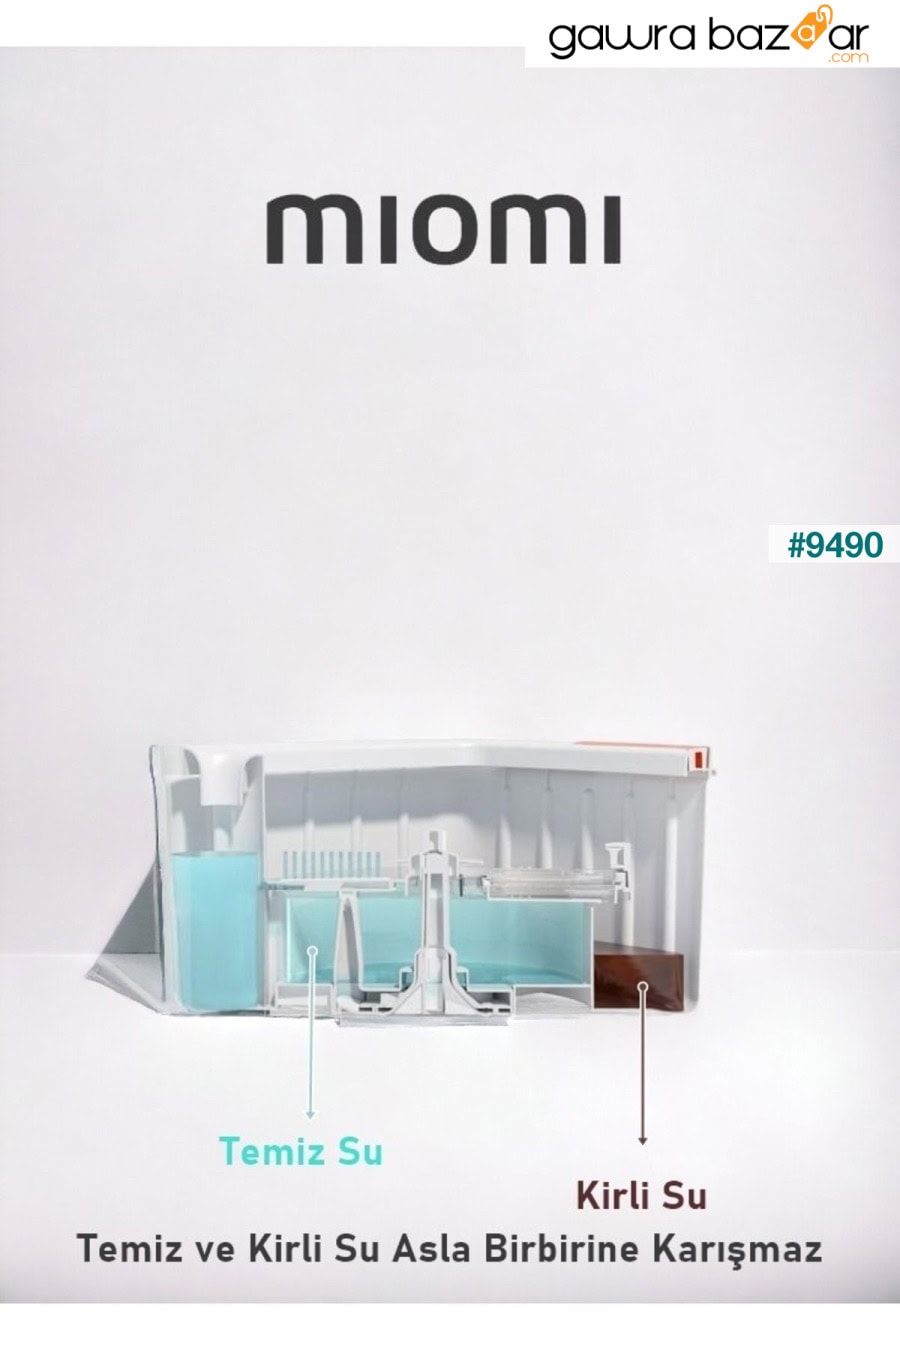 مجموعة ممسحة للتنظيف الأوتوماتيكي مع ممسحة احتياطية لفصل المياه النظيفة والمتسخة، رأس مربع بتصميم متجدد Miomi 4